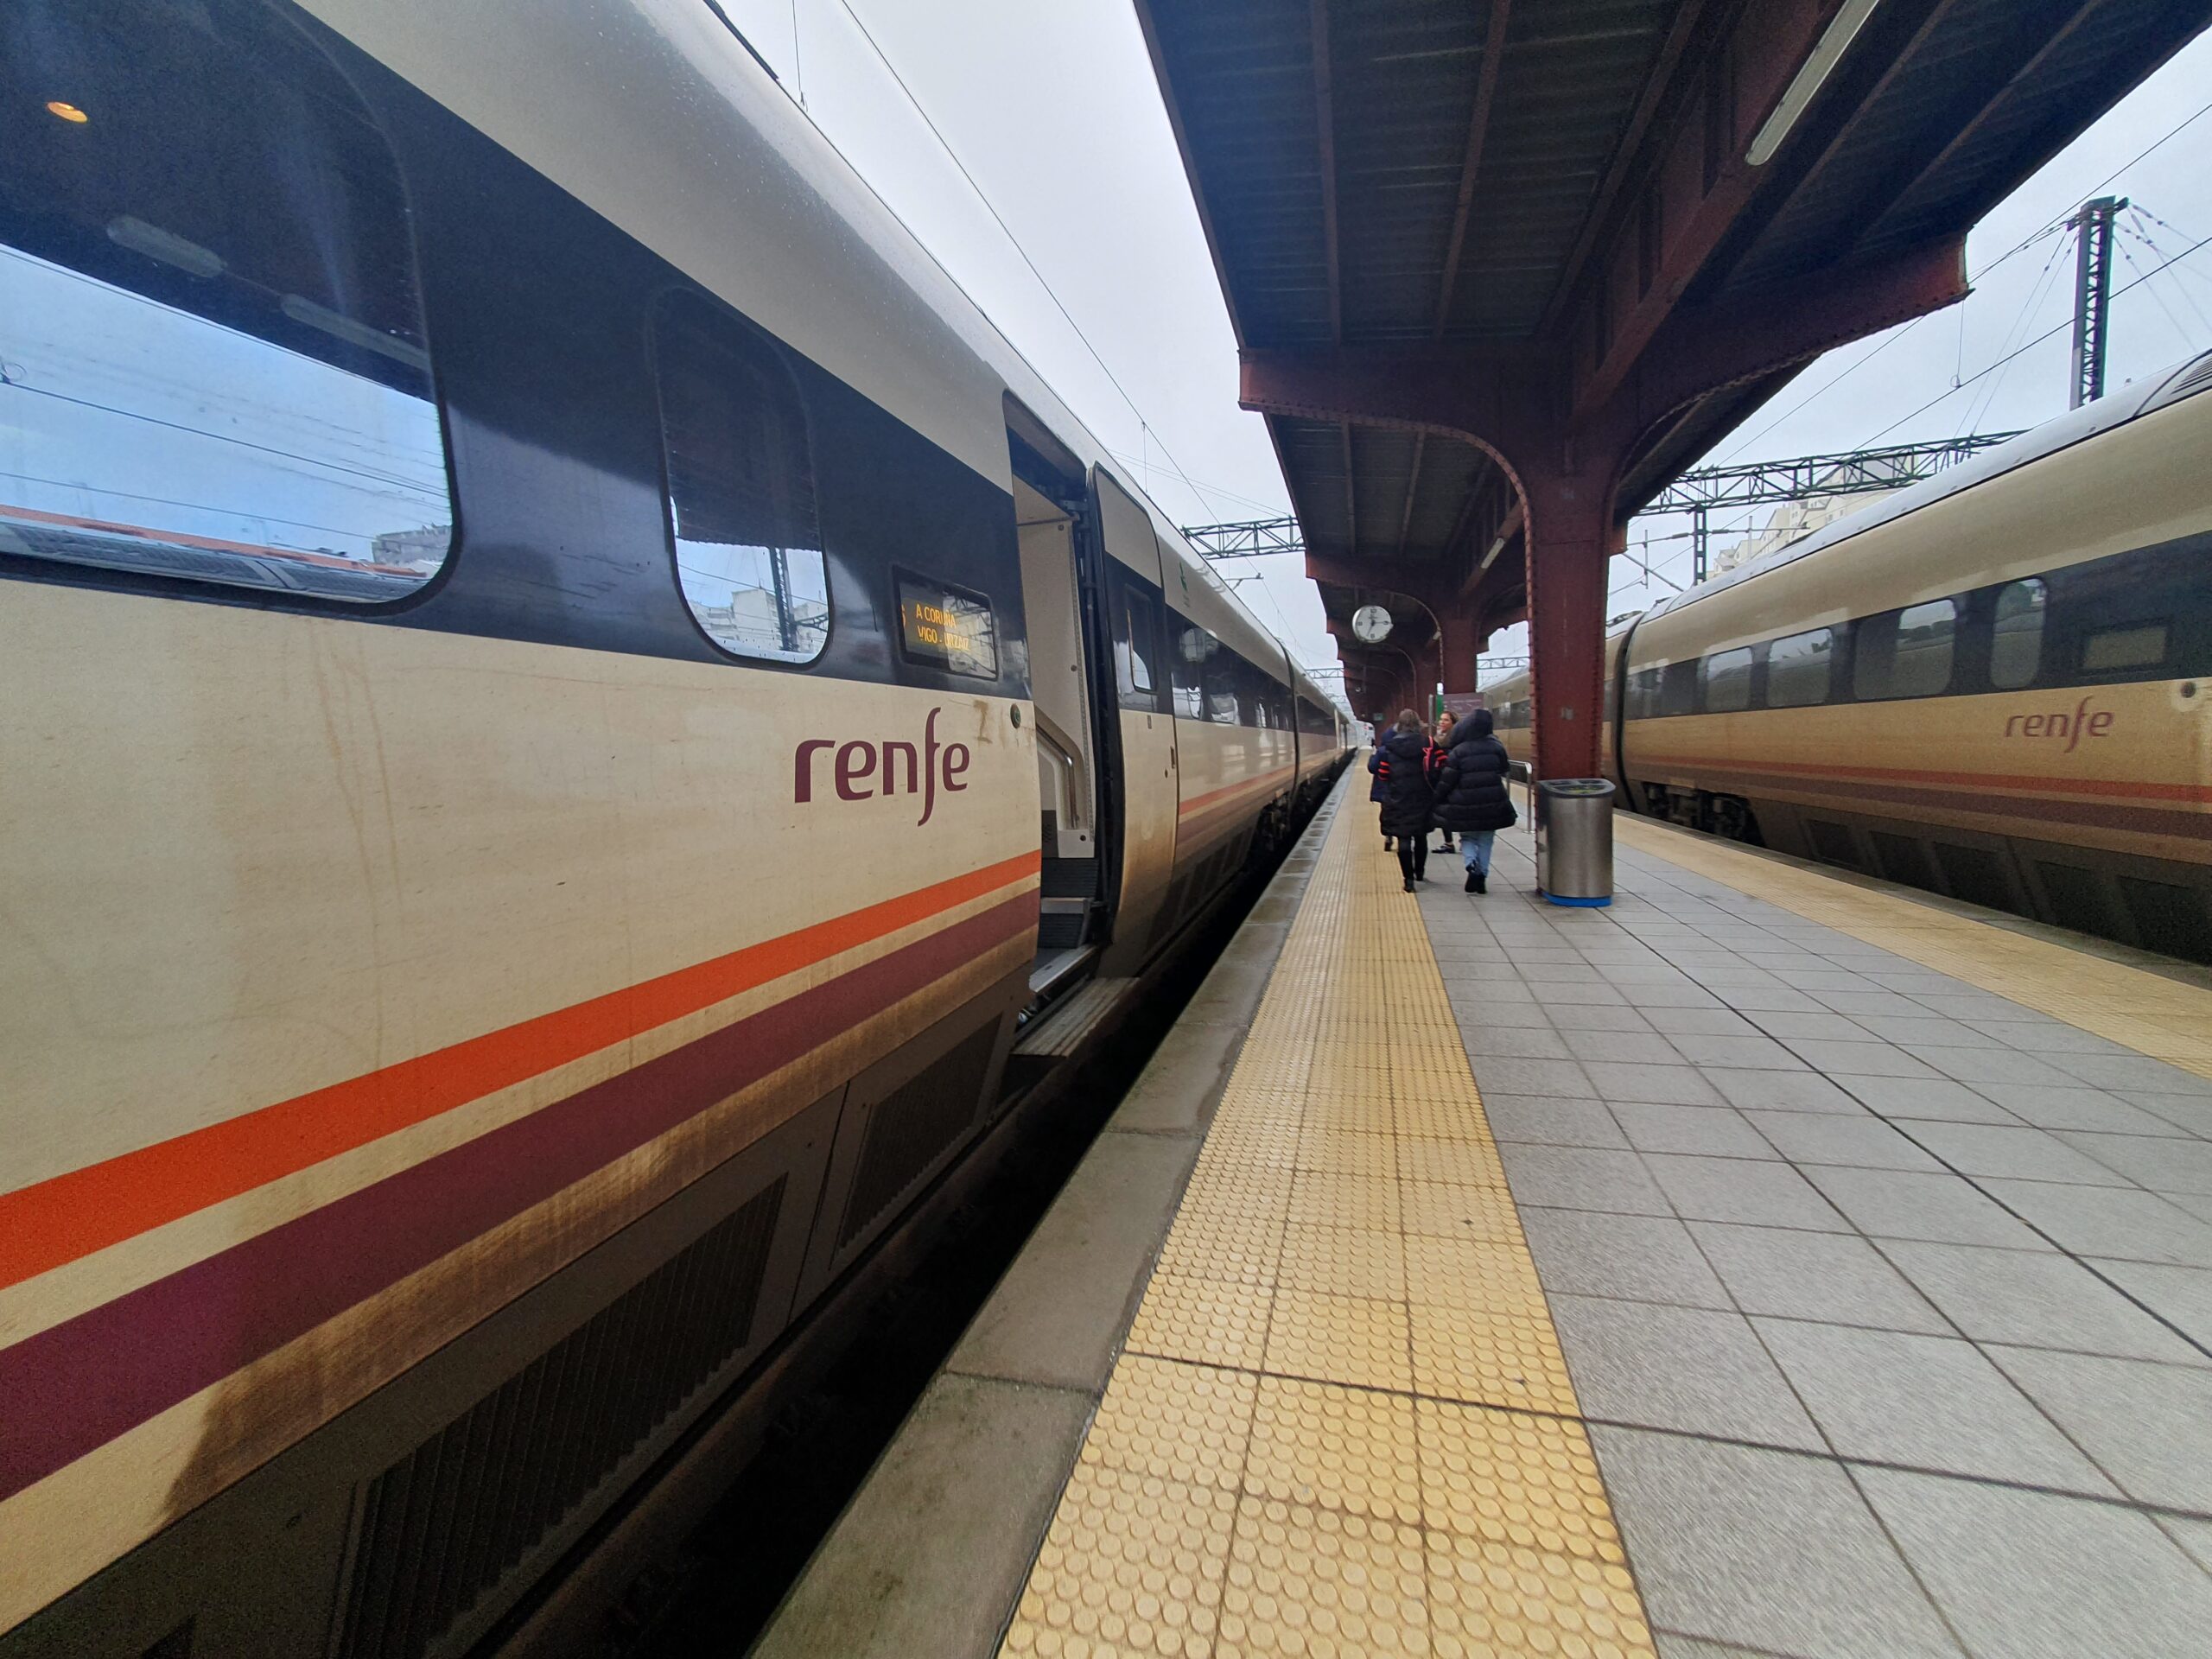 Nuevo retraso, esta vez de 1 hora y 20 minutos, en un tren Vigo-Coruña